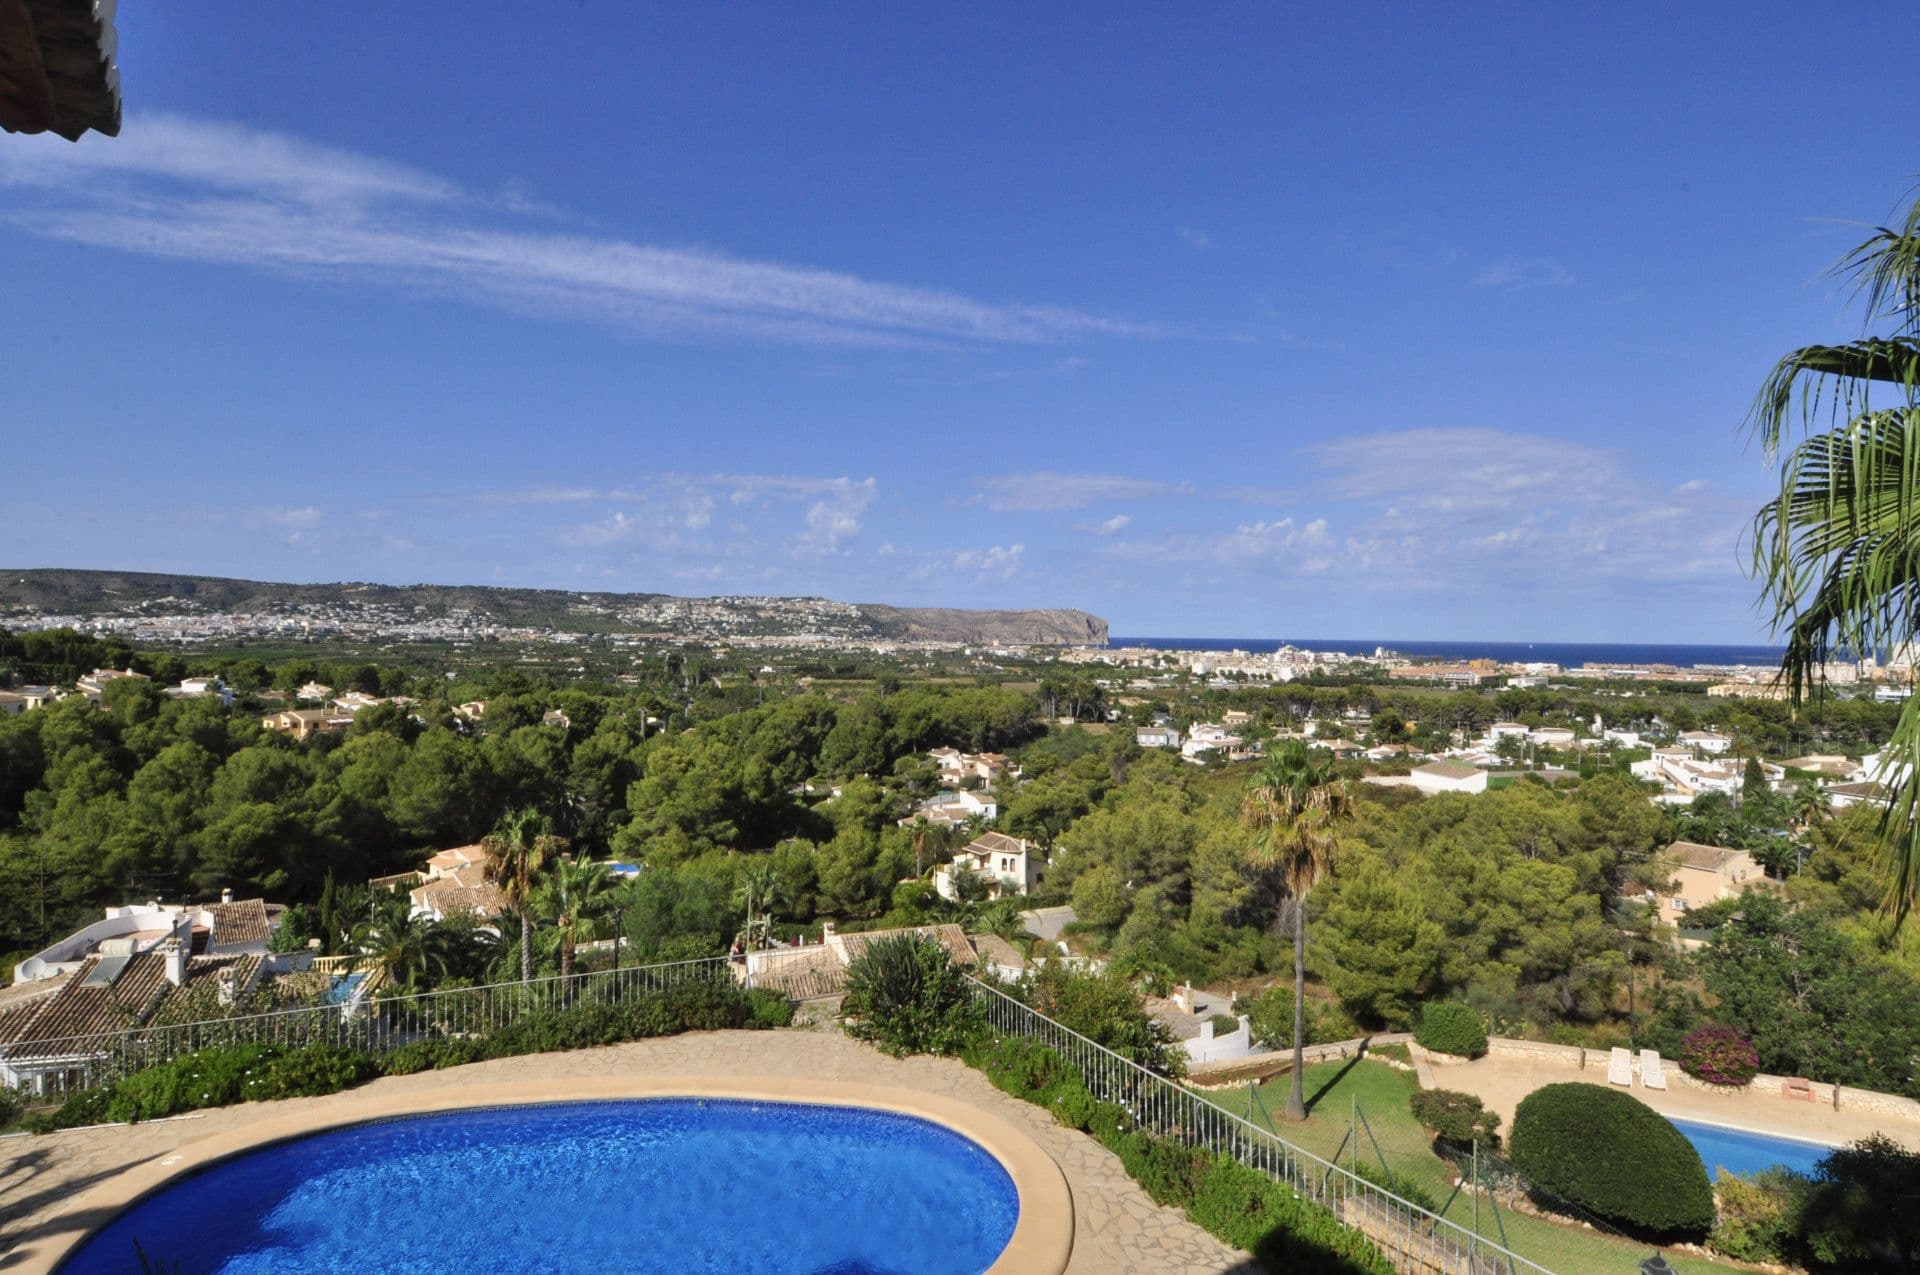 Własna własność z widokami morskimi znajduje się bardzo blisko Playa del Arenal de Jávea i usług.